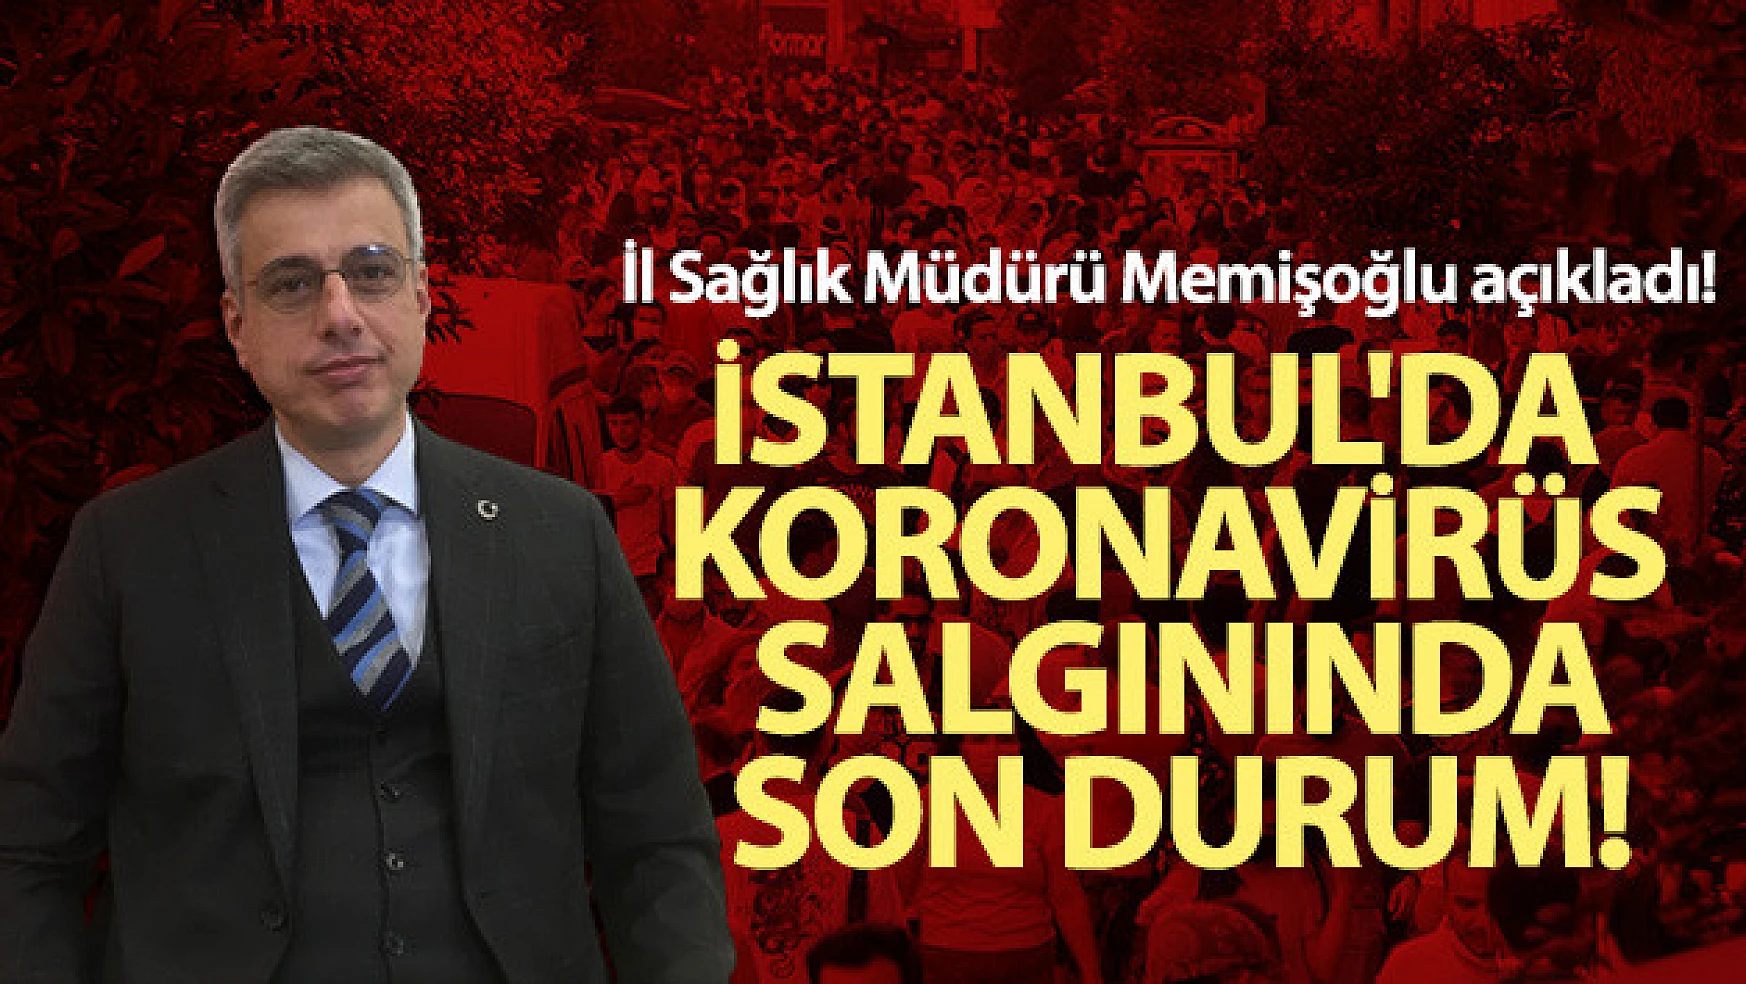 İstanbul İl Sağlık Müdürü Memişoğlu açıkladı! İstanbul'da koronavirüs salgınında son durum!